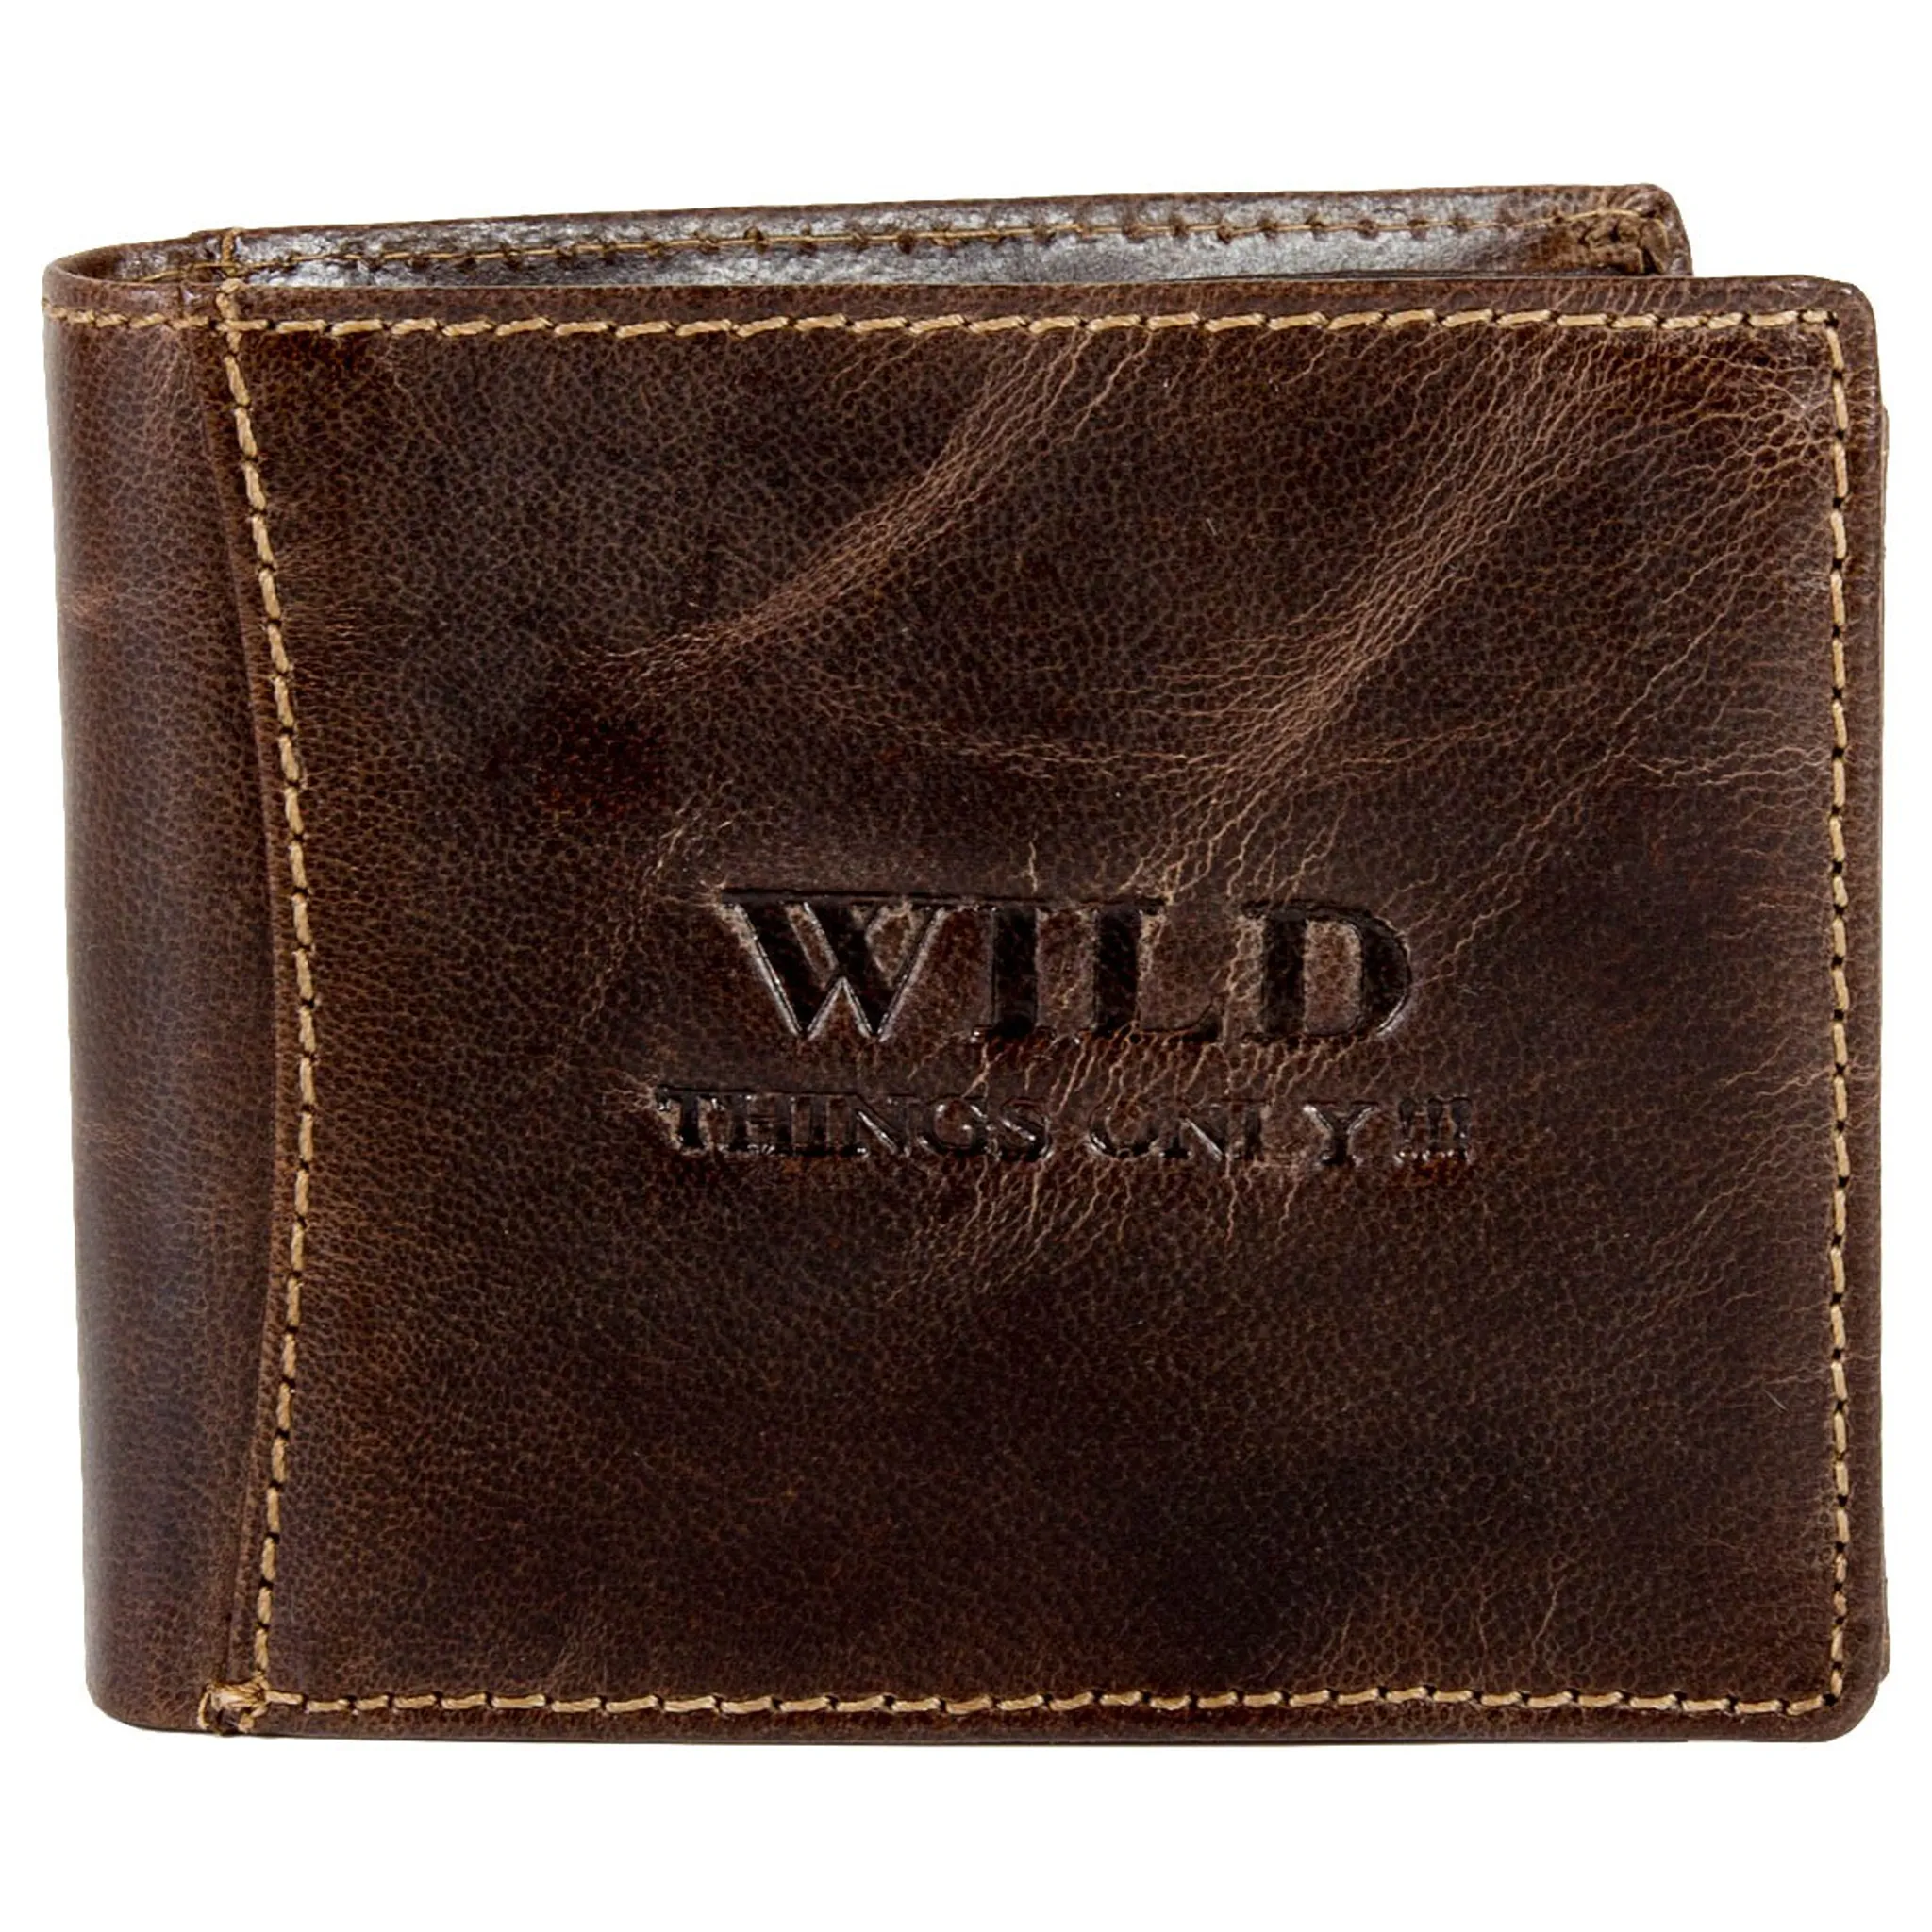 DrachenLeder Schlüsseltasche Minibörse Leder Wild Things Only Geldbörse Farbe nach Auswahl OPJ904X 